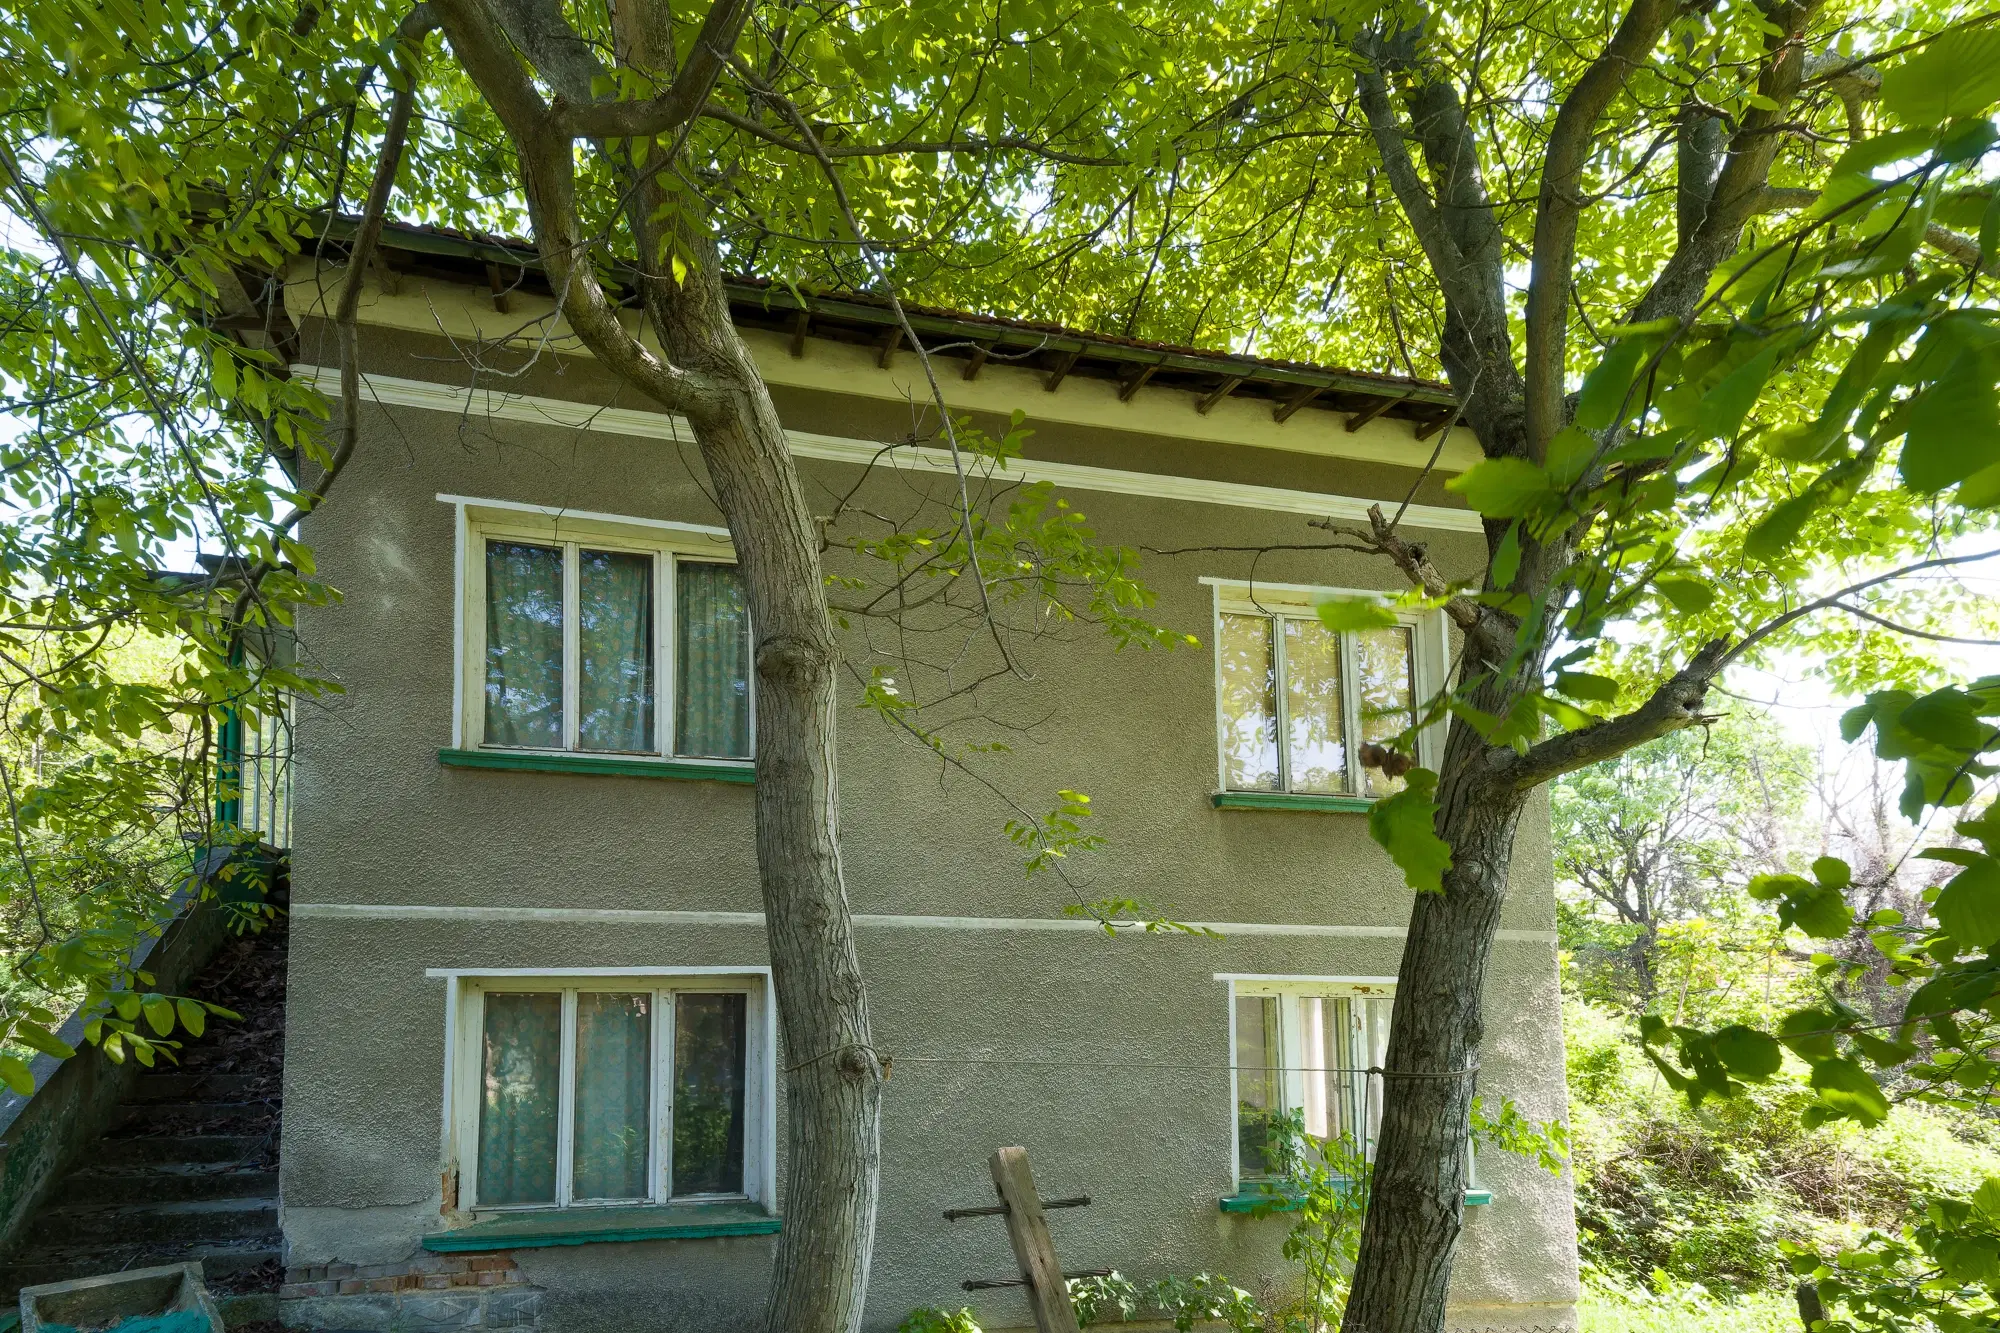 Huis met 2 verdiepingen, 2.000 m2 grond en bijgebouwen in Perilovets - Bulgarije